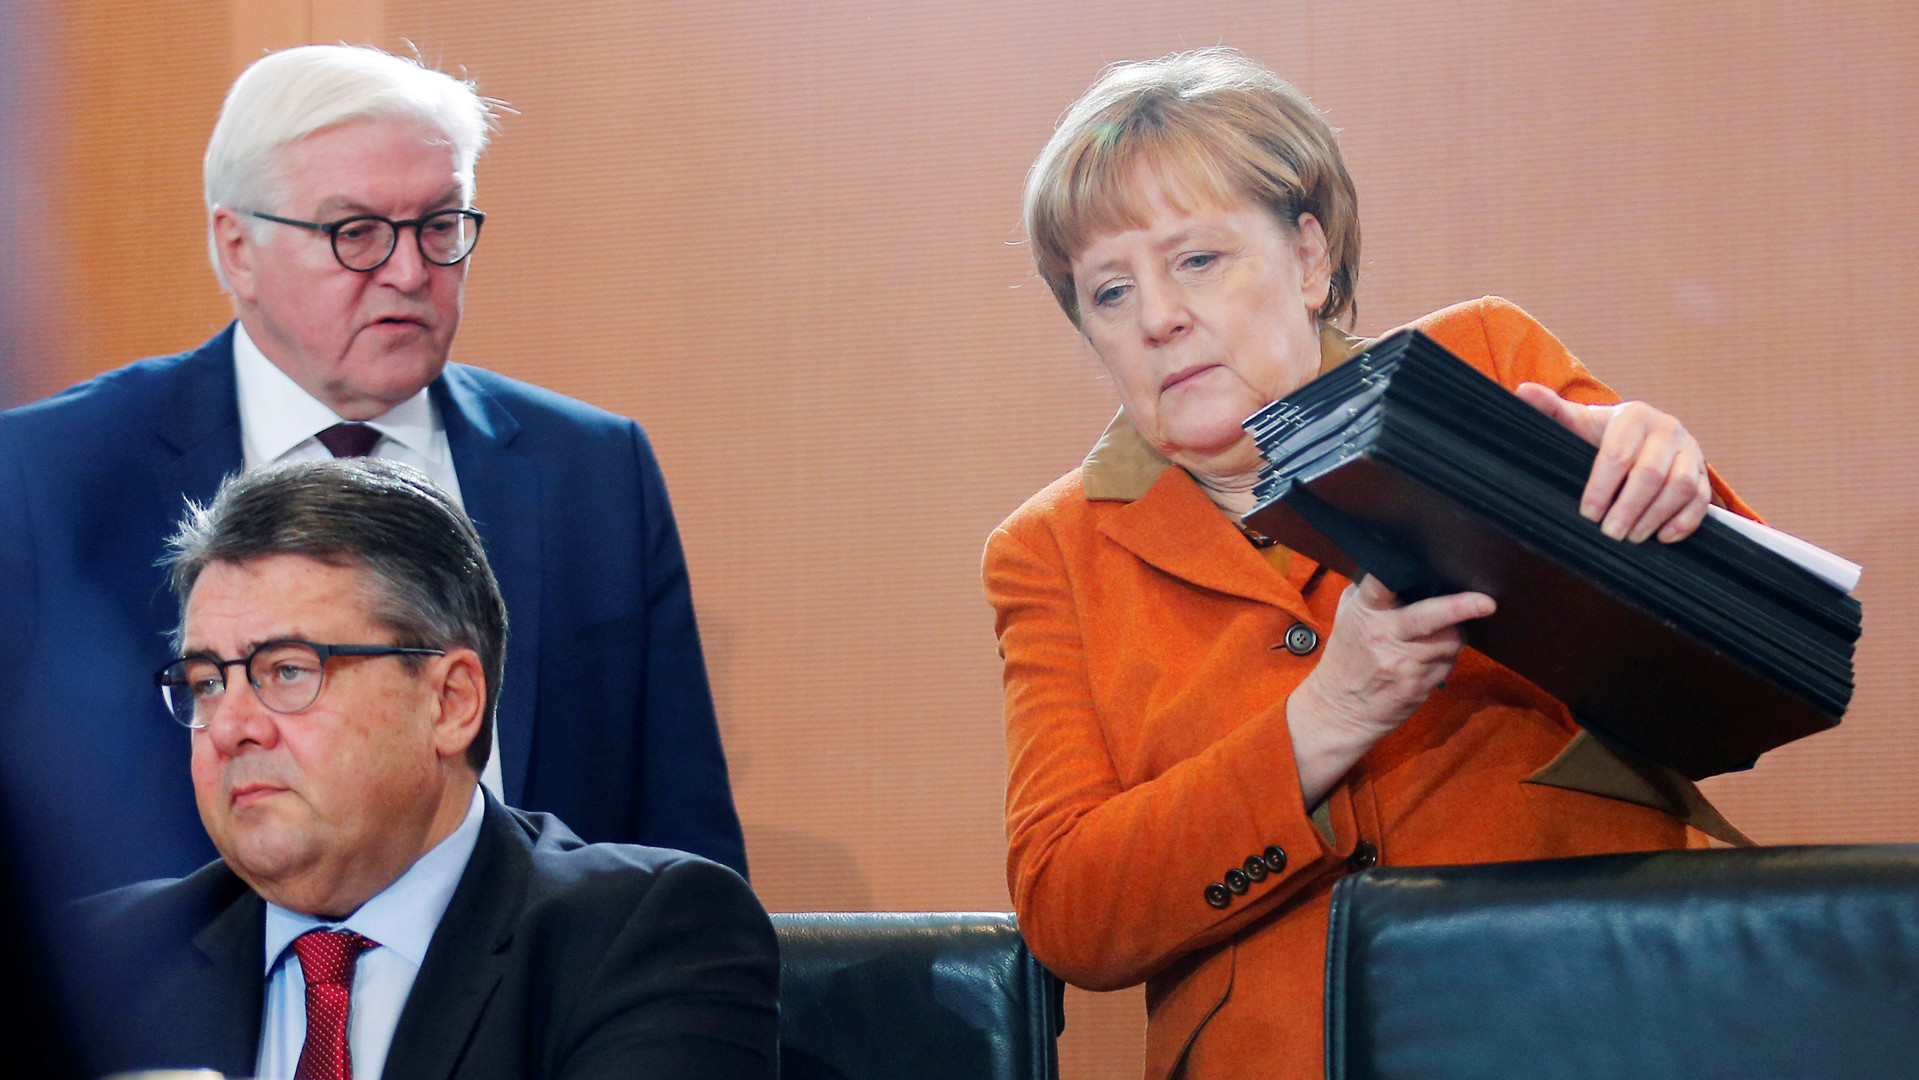 Срок за репост: в Германии намерены сажать в тюрьму за распространение фейковых новостей